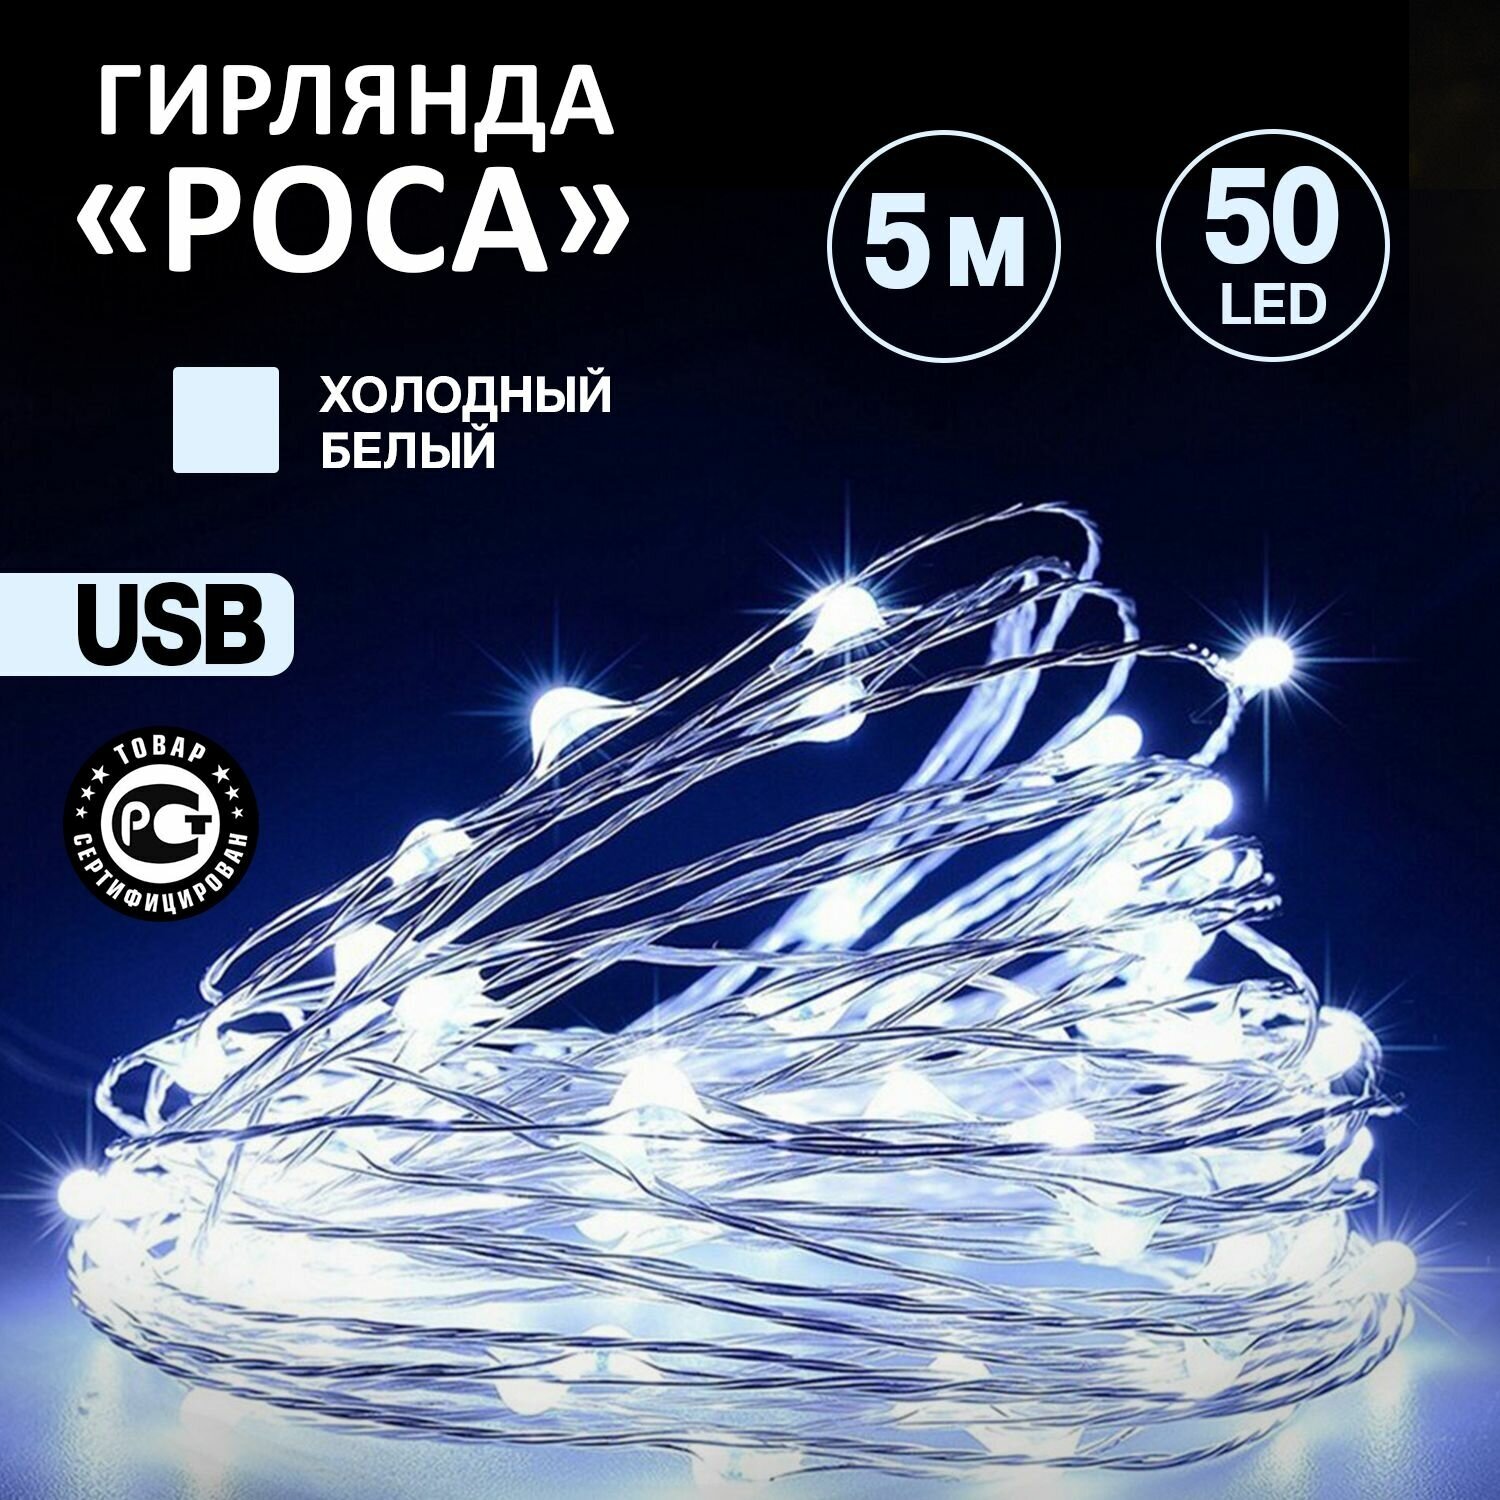 Светодиодная гибкая гирлянда USB "Роса" Neon-Night 5 м, белое свечение/ новогодние товары гирлянды / новогодняя распродажа / новогодние скидки / новогодние подарки